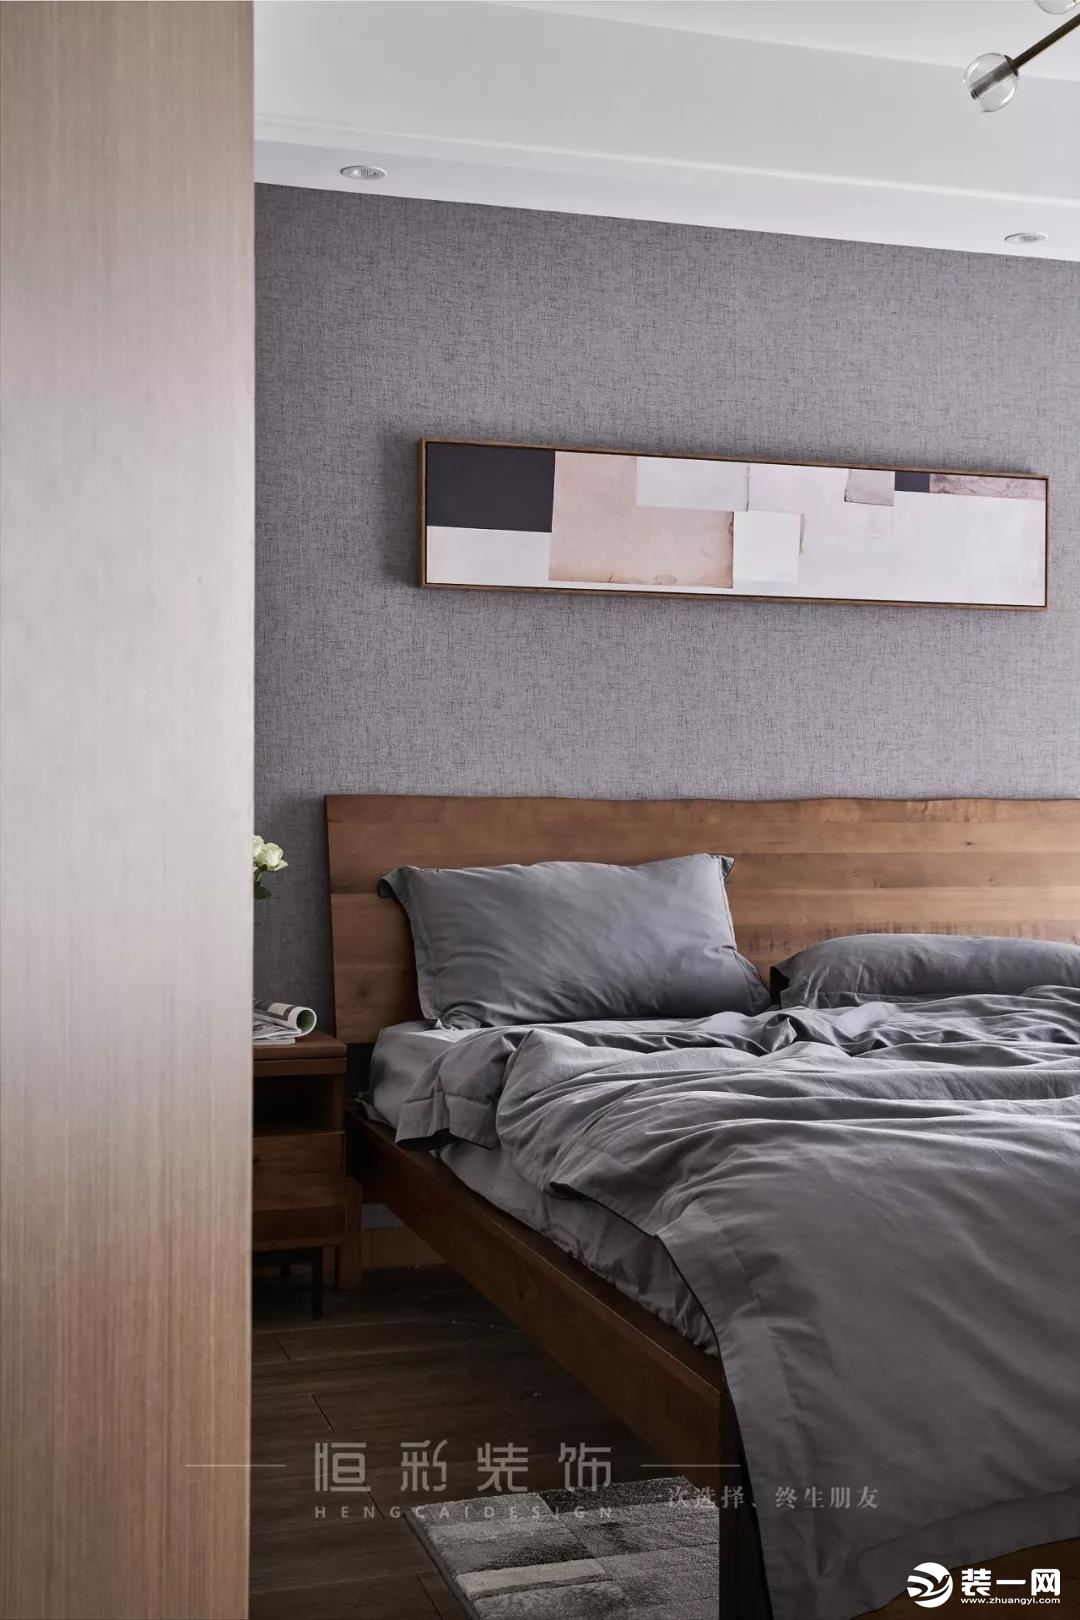 卧室空间整体配色呈浅灰色系。浅灰色墙纸搭配浅灰色的纯色床品，一种简单到极致的高级感便油然而生。木饰面